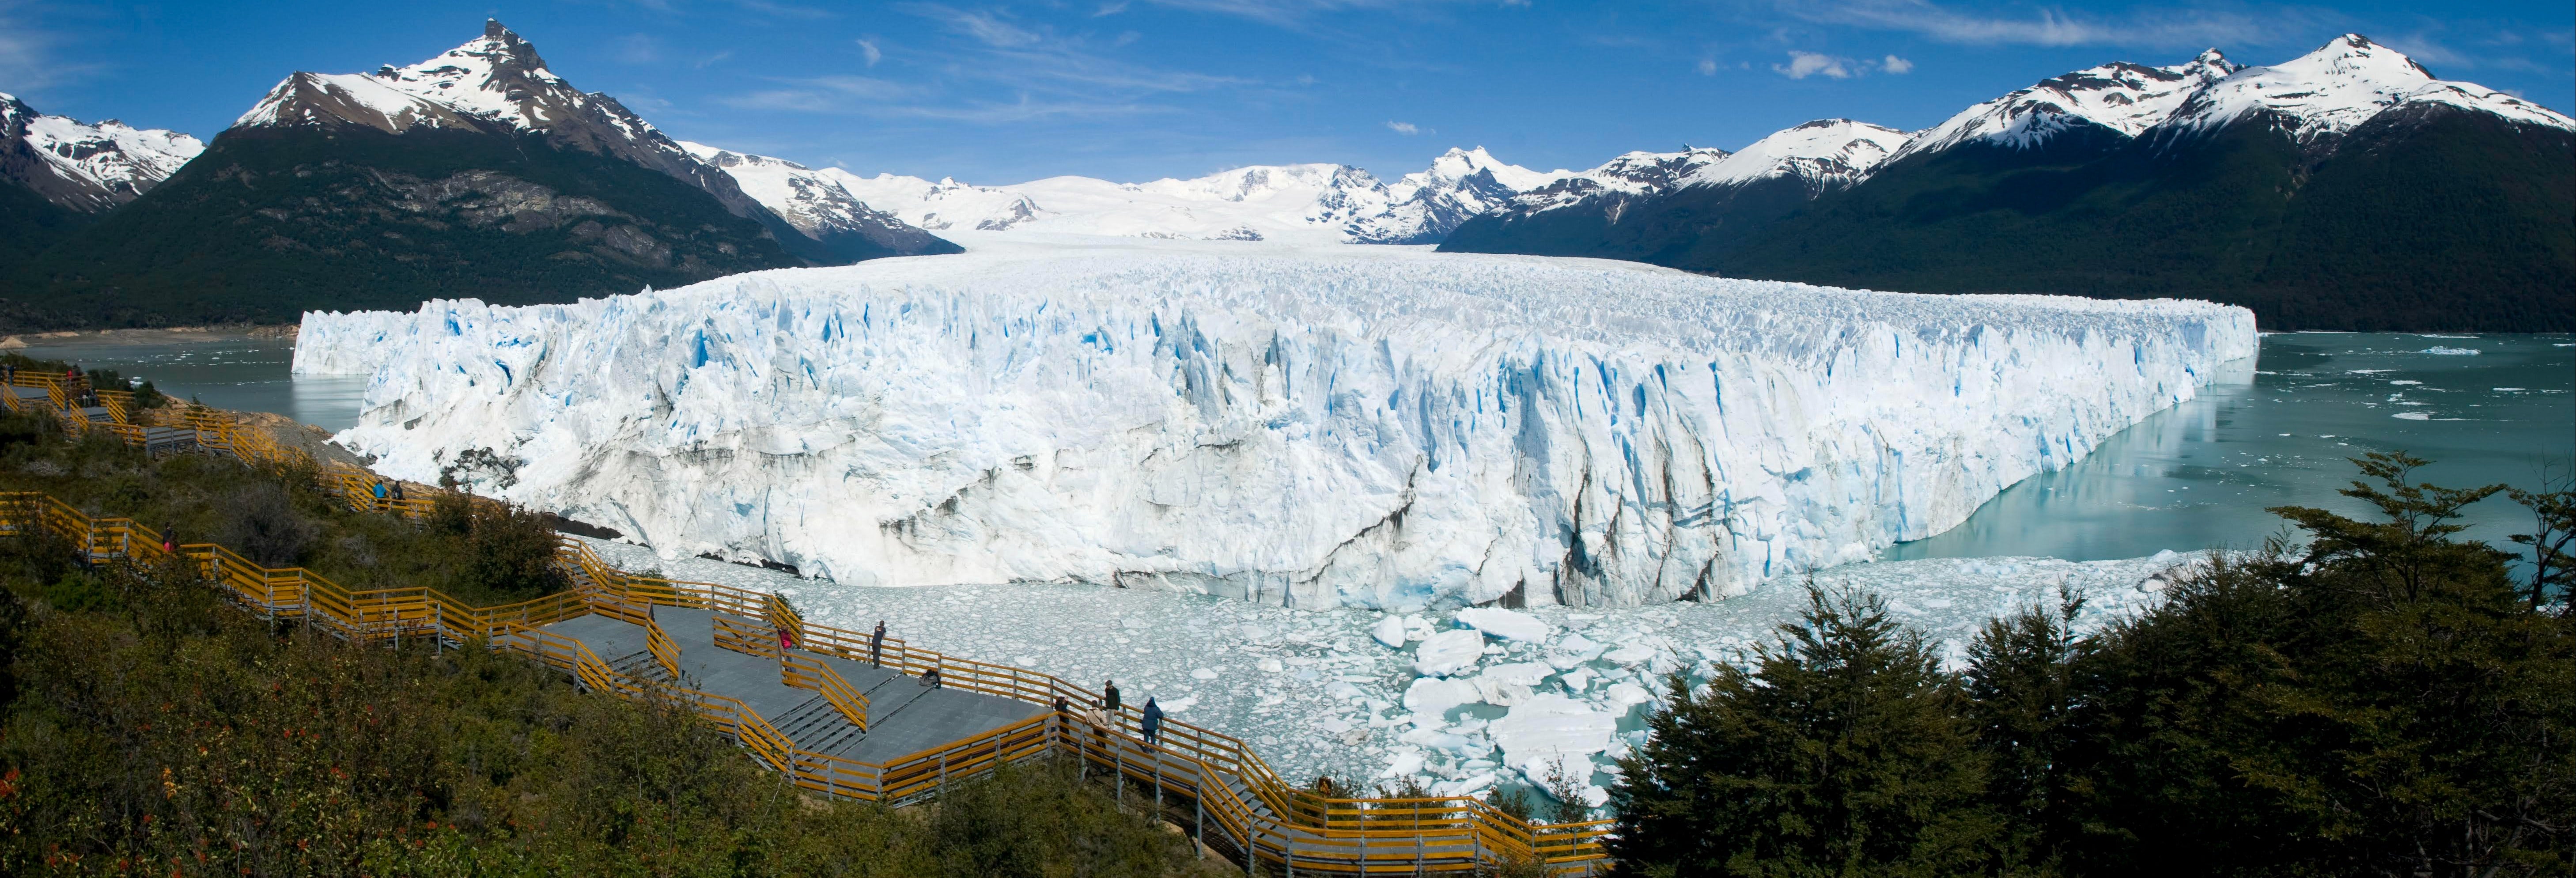 Excursão ao Glaciar Perito Moreno por conta própria